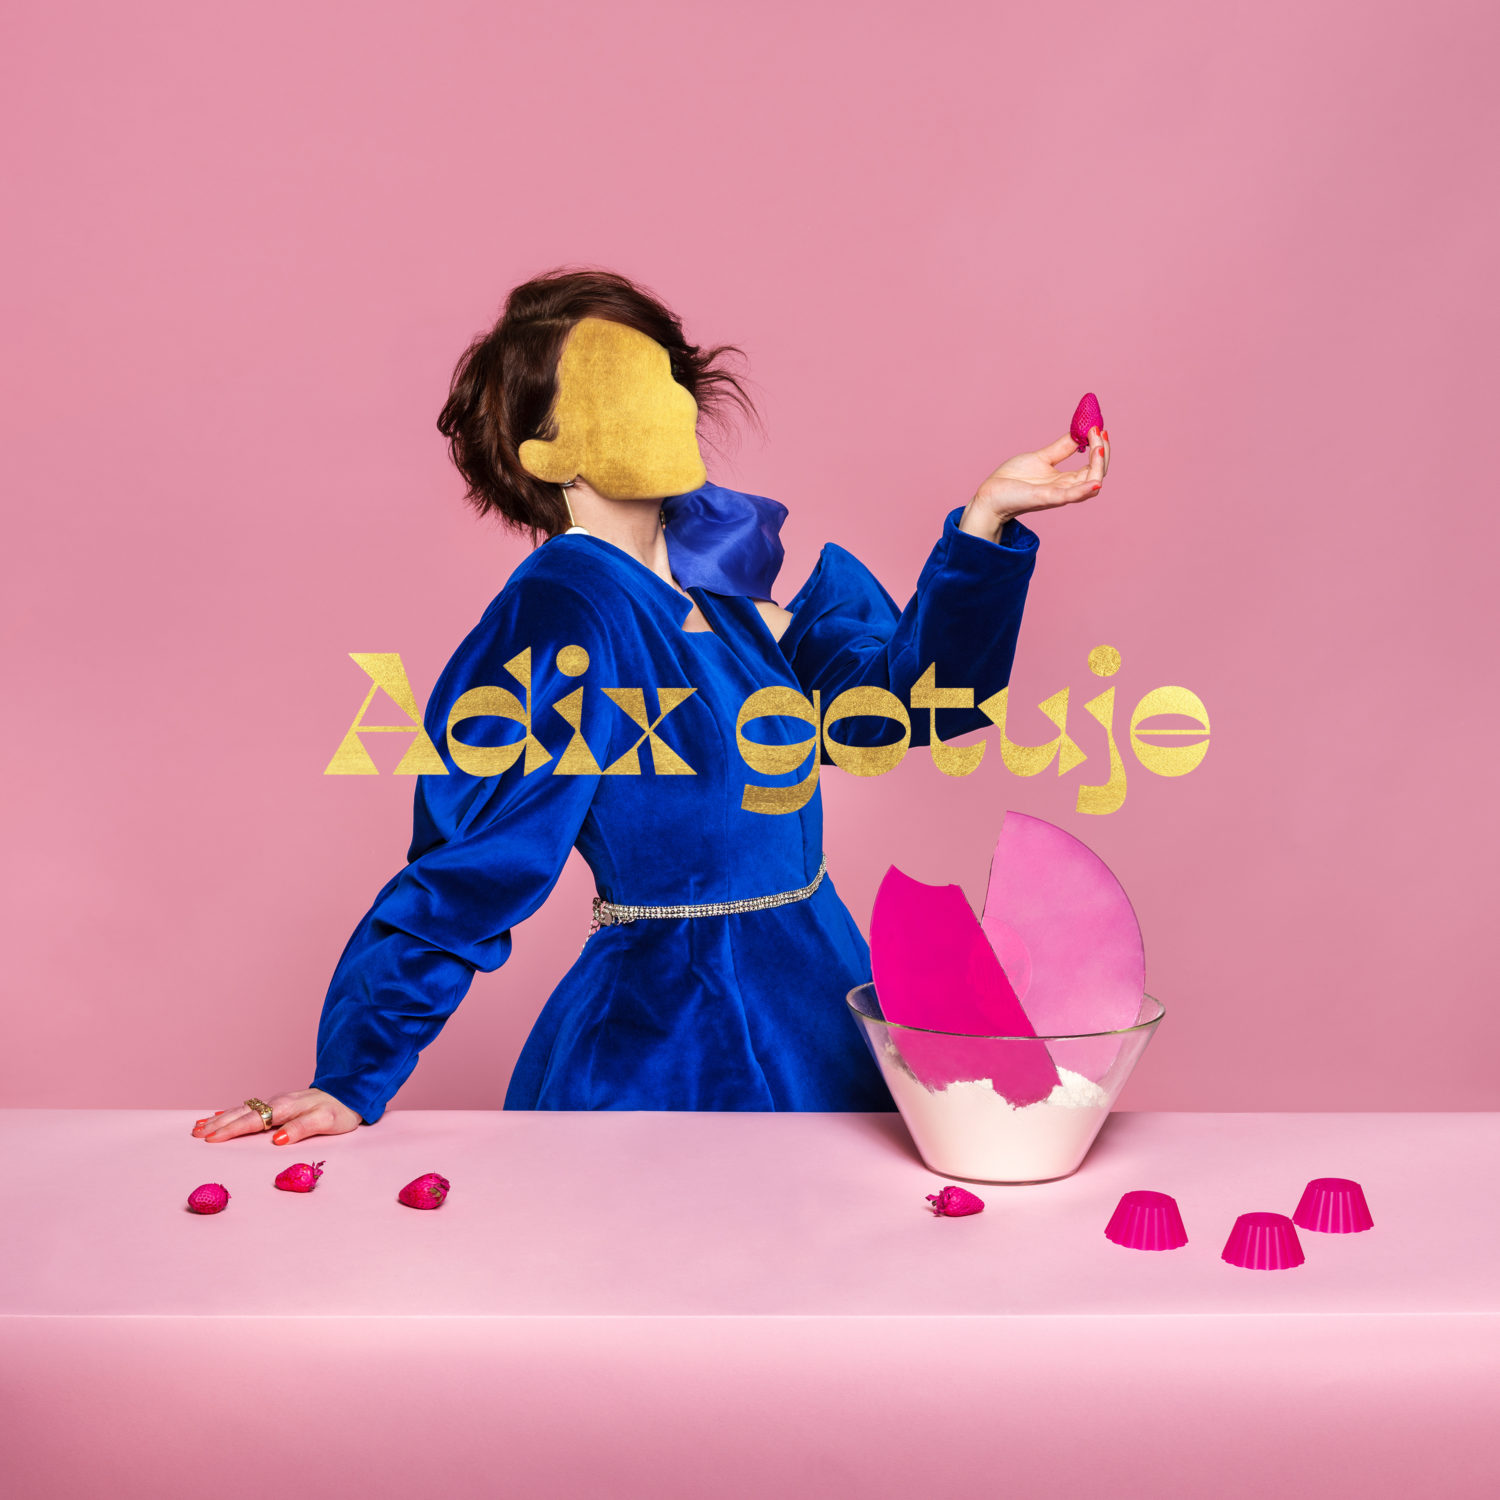 Adix - Gotuje